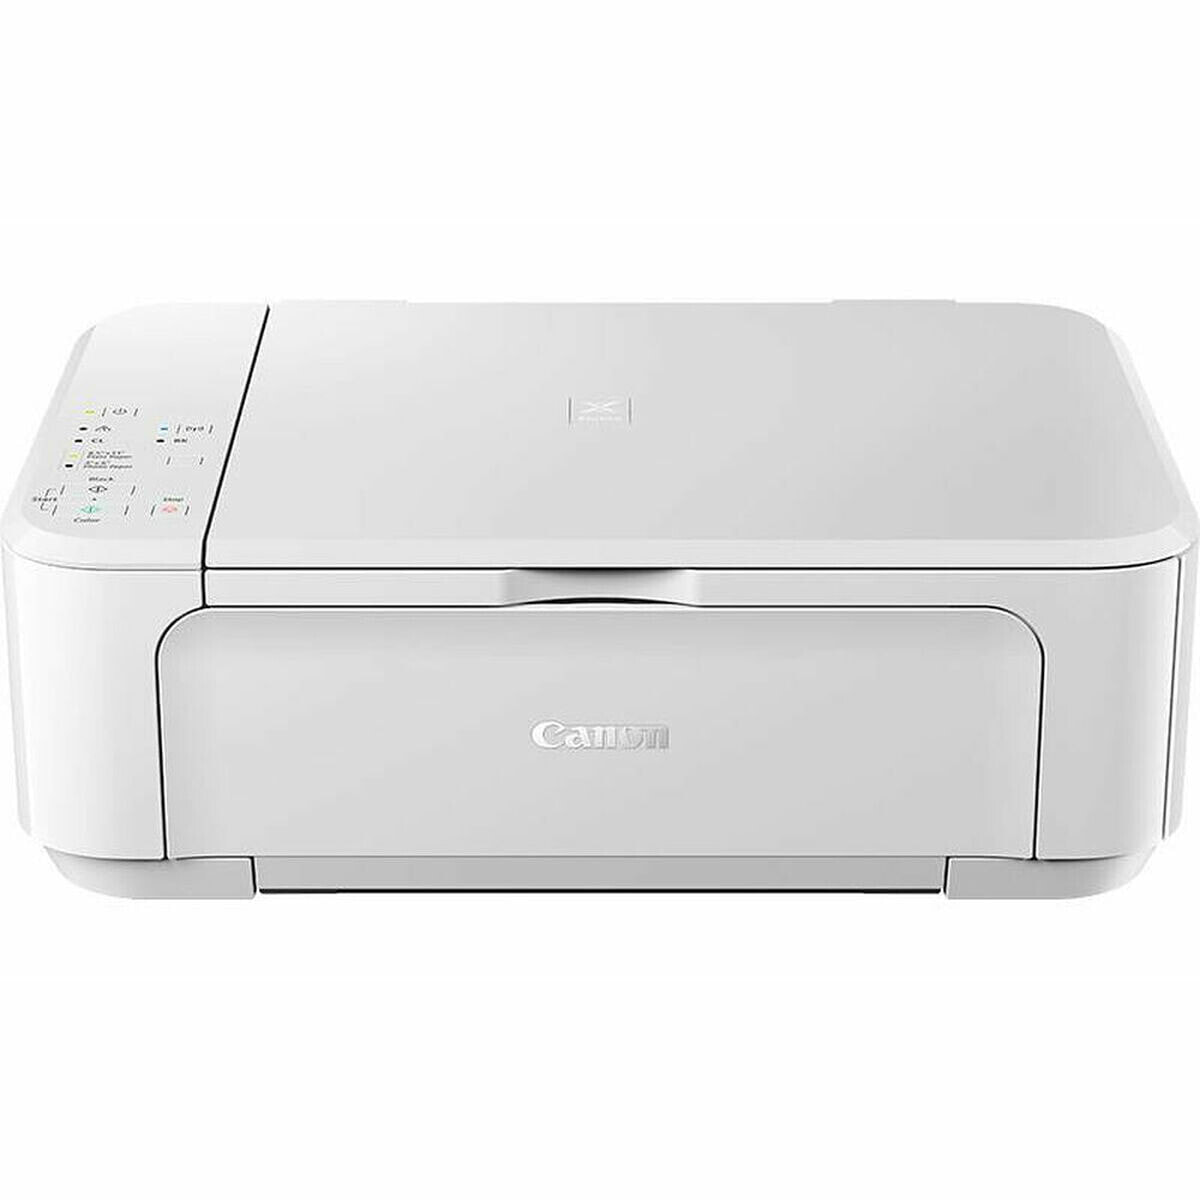 Multifunction Printer Canon 0515C109AA